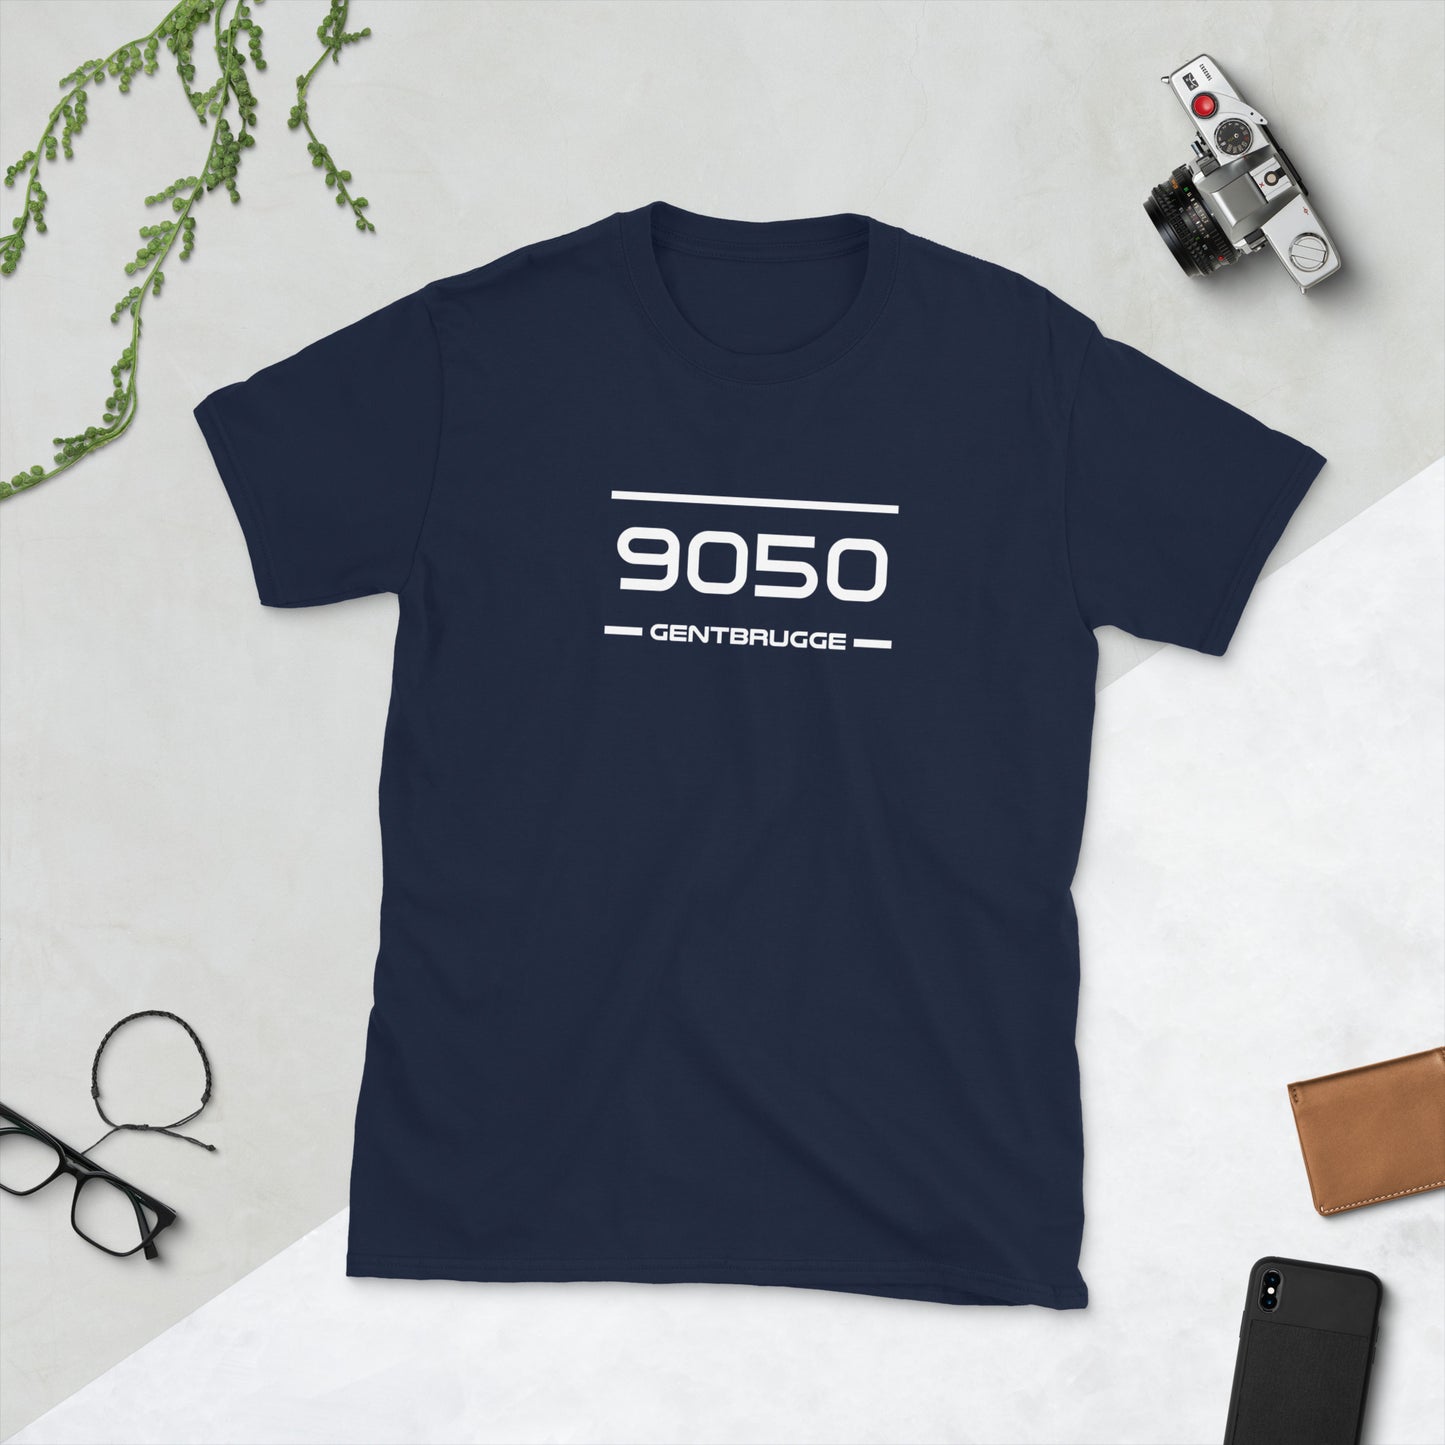 T-Shirt - 9050 - Gentbrugge